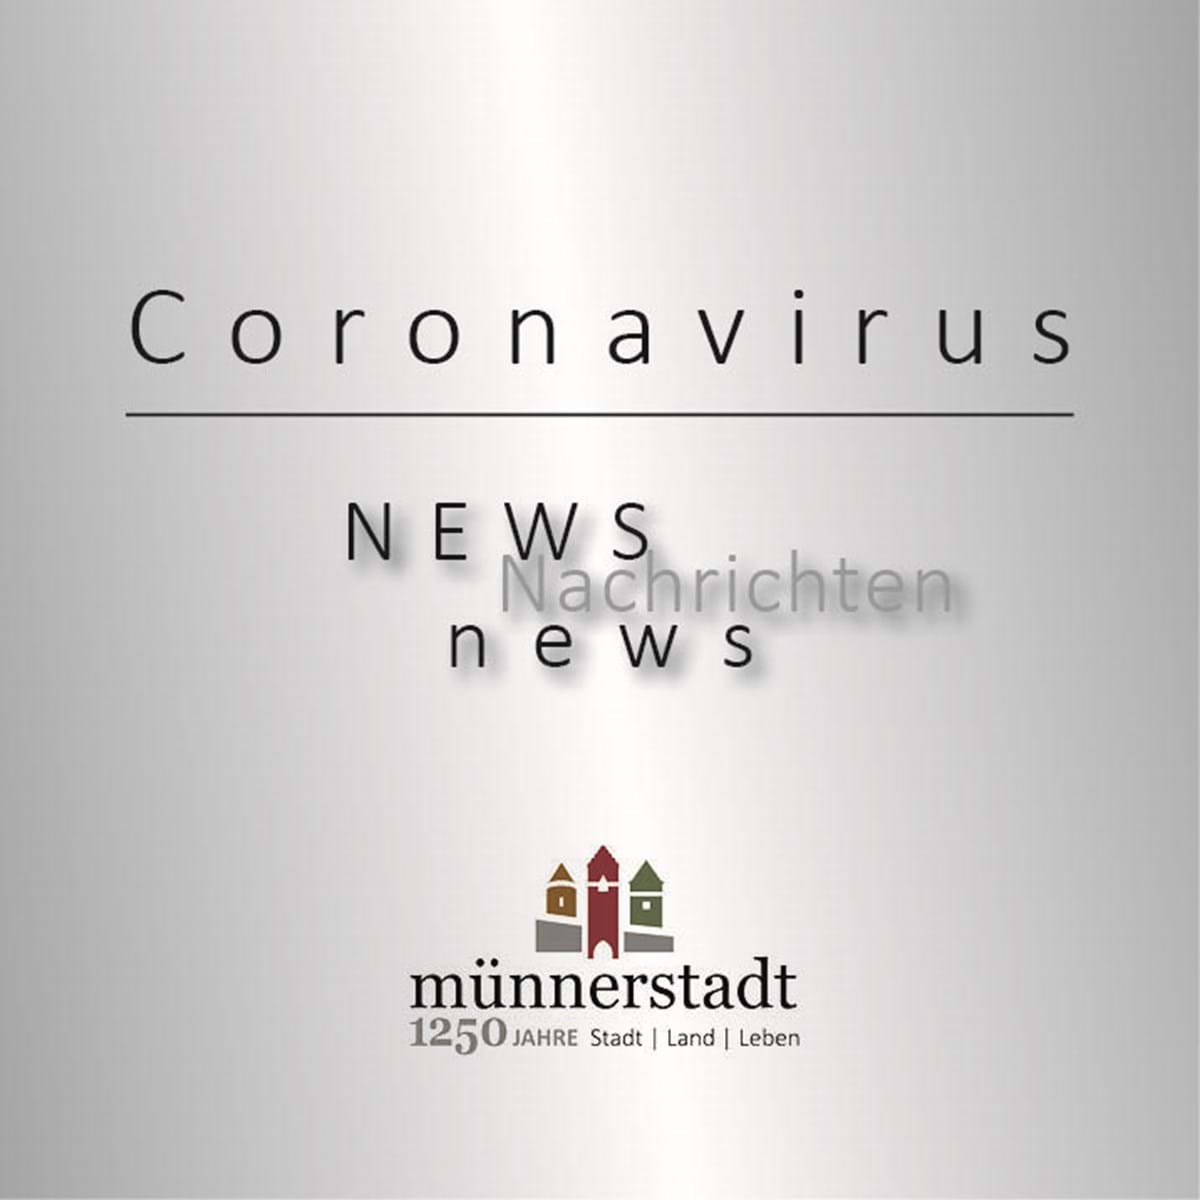 Coronarvirus - wichtige und nützliche Informationen